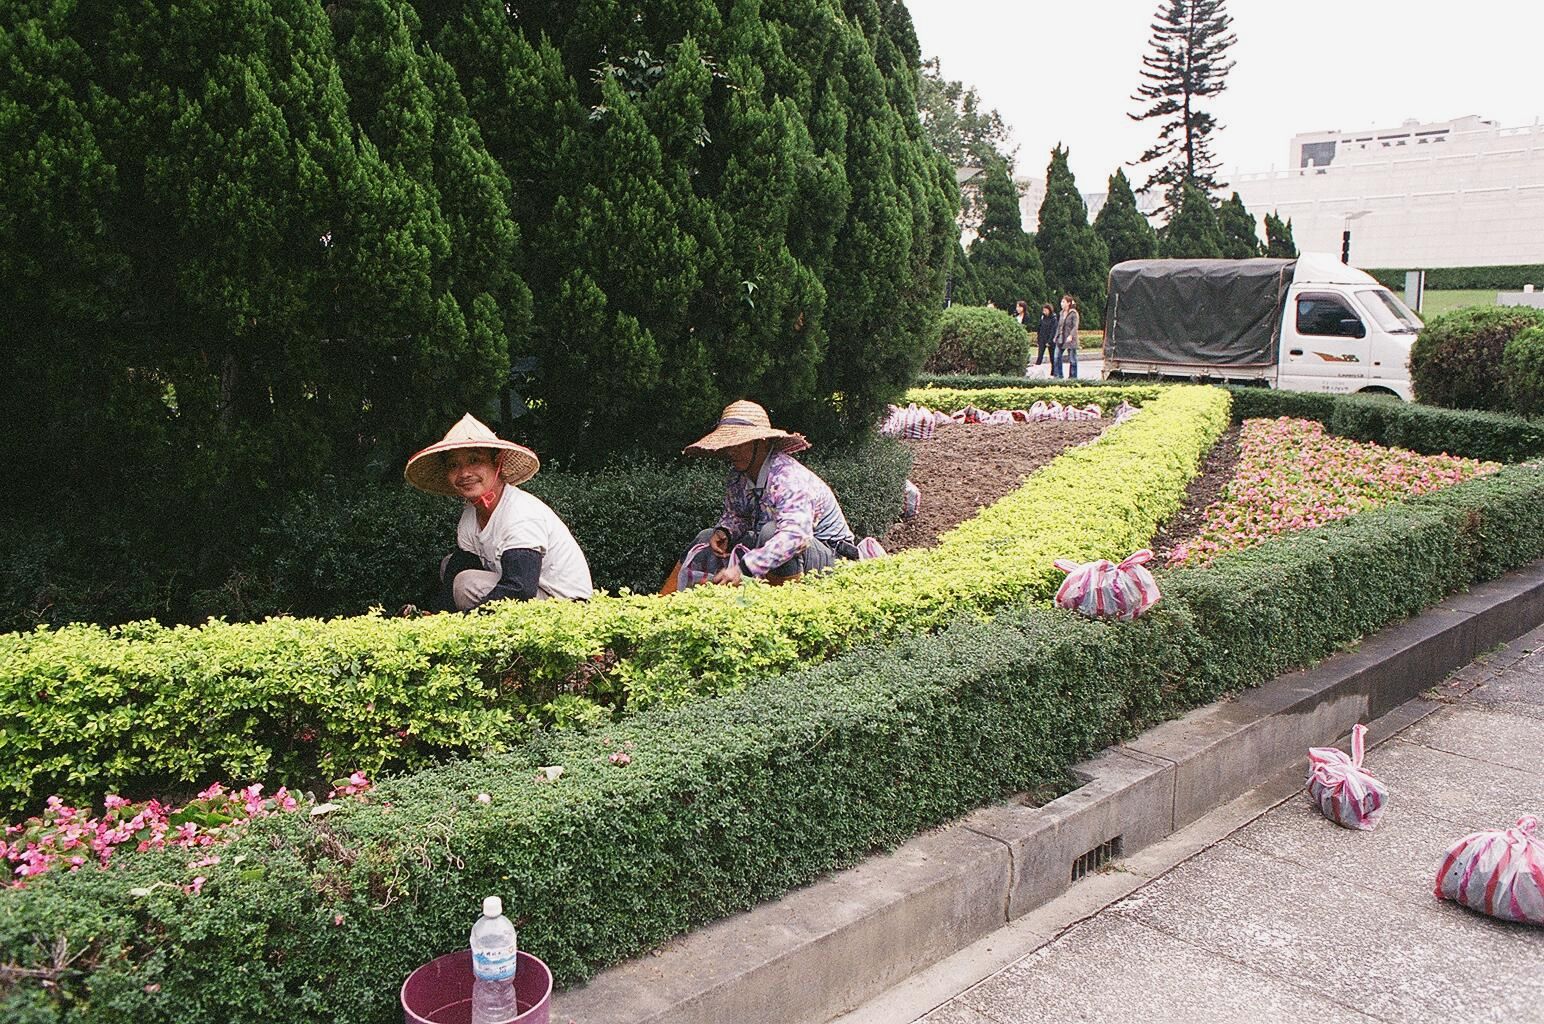 fotka / image zahradnici u Cankajsekova pamatniku, Taipei, Taiwan